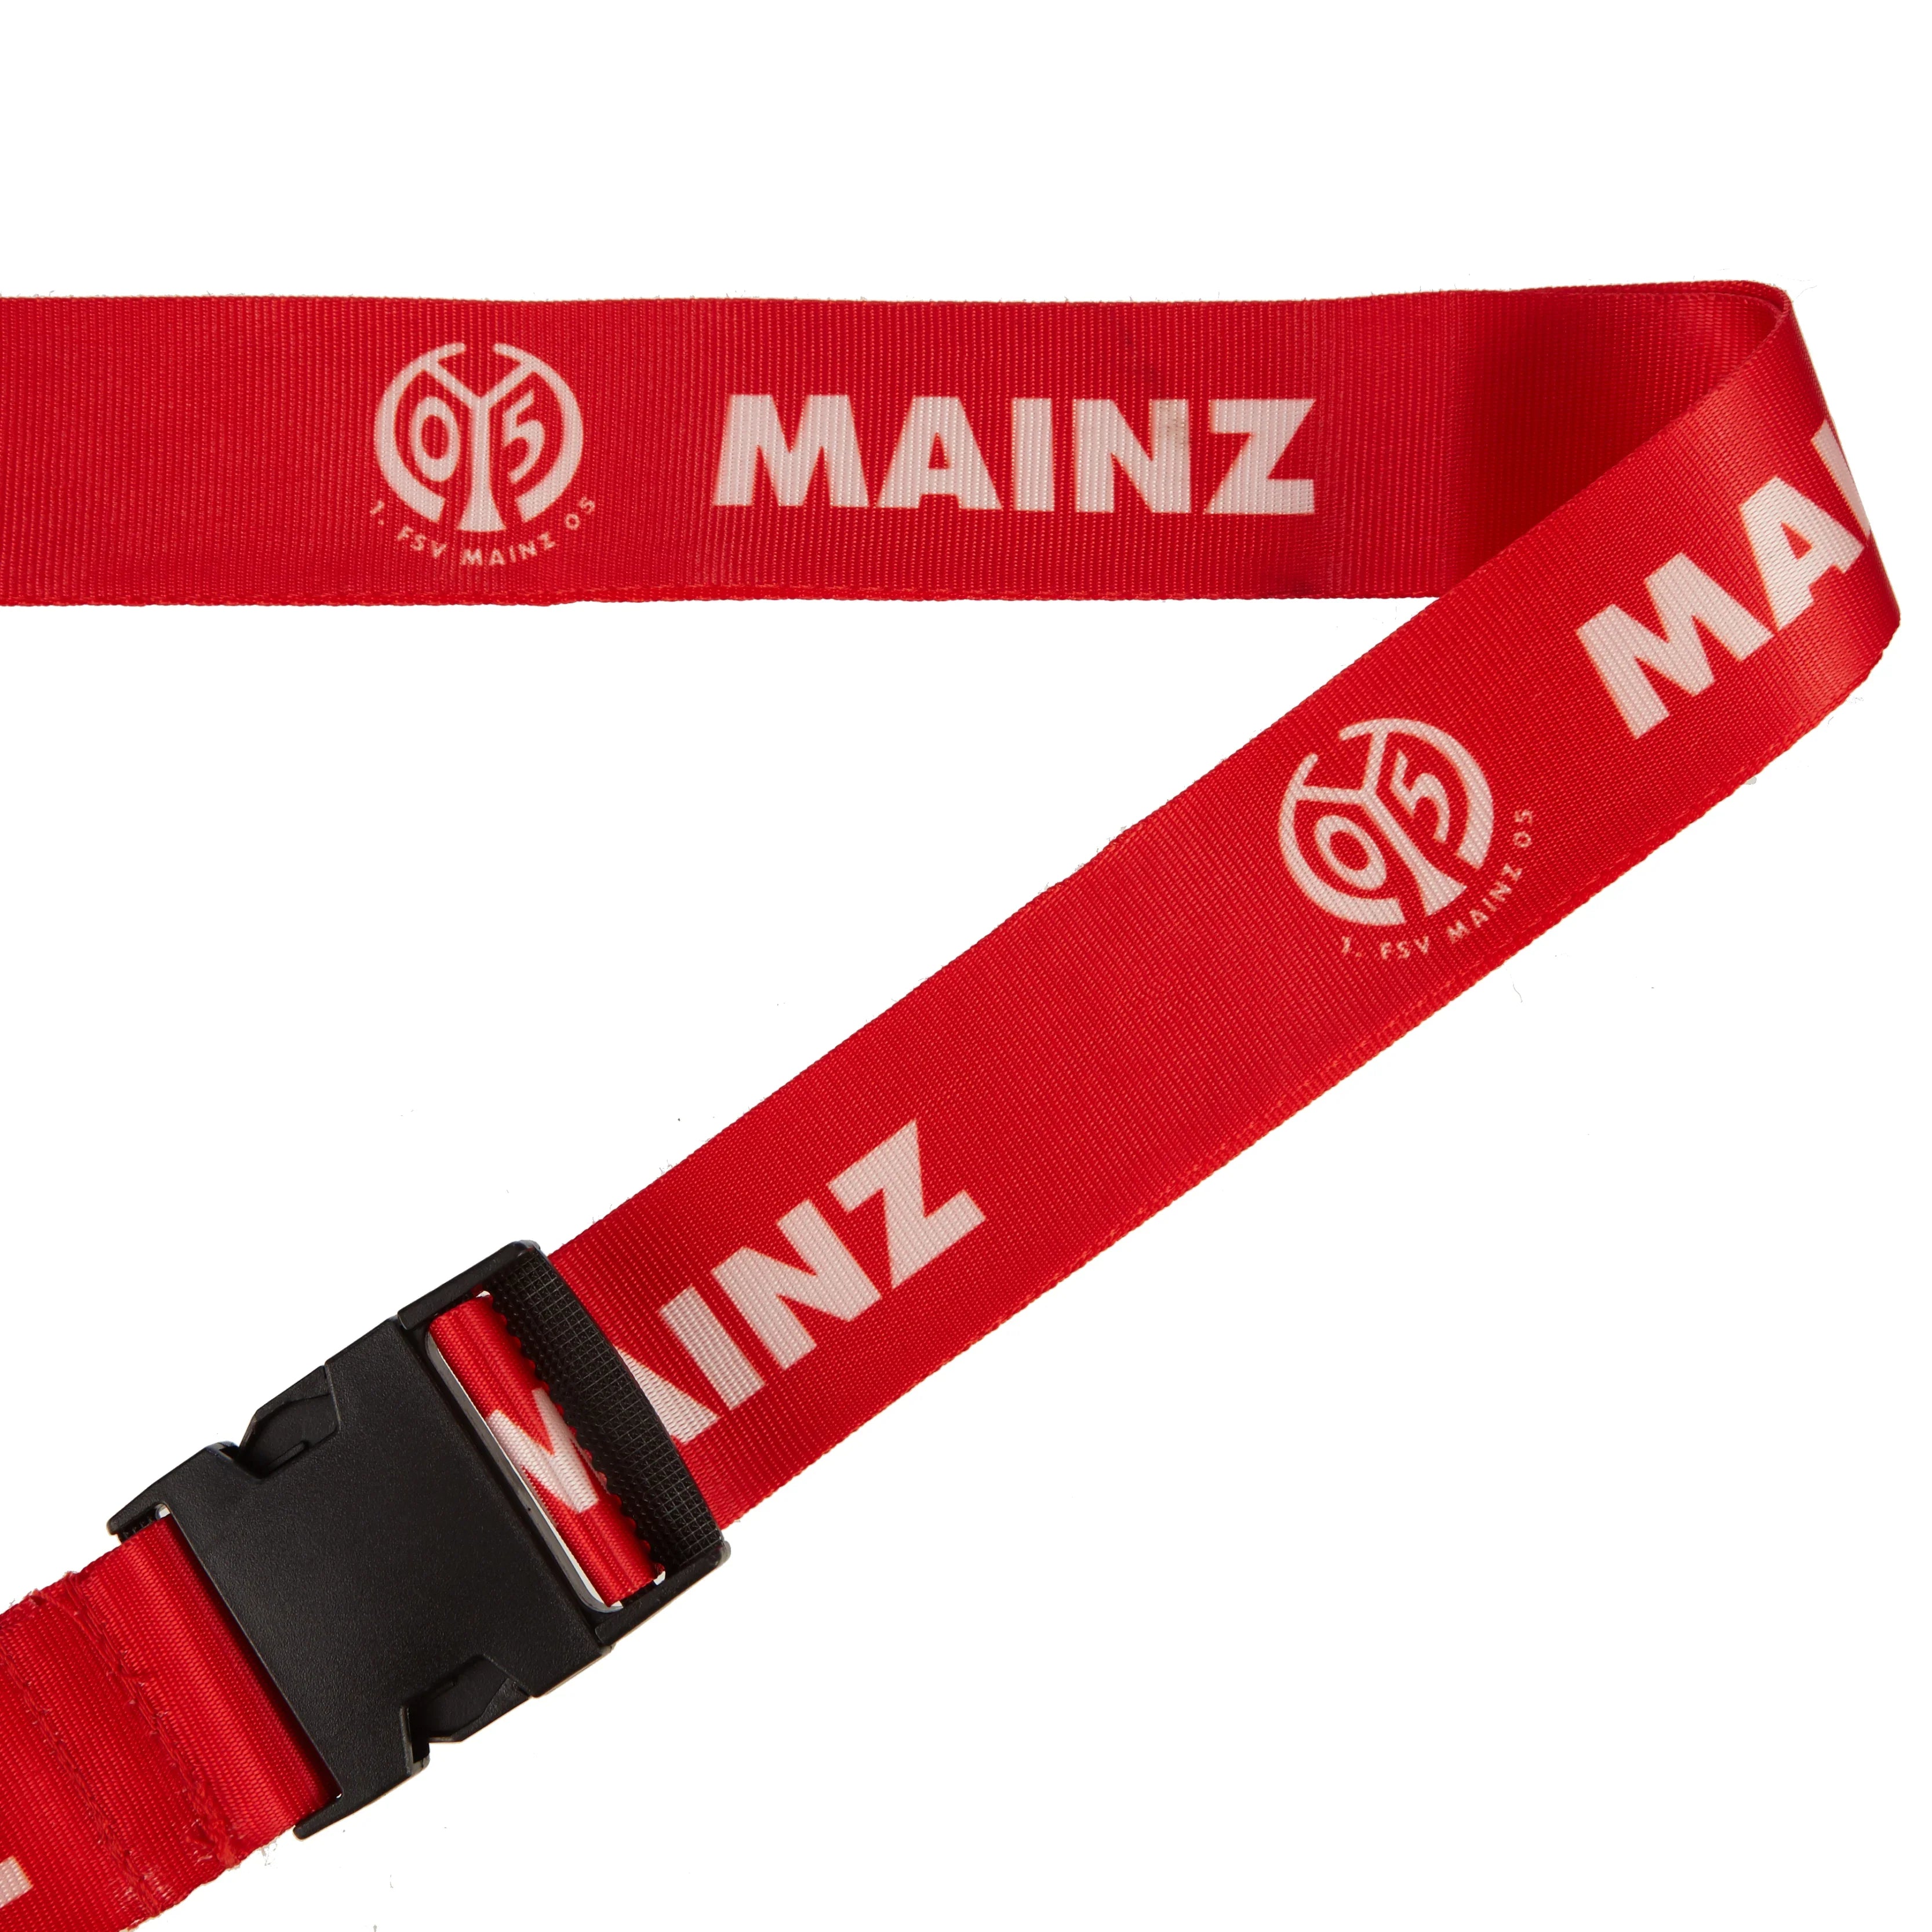 Mein Verein Mainz 05 Kofferband 180 cm - Mainz 05